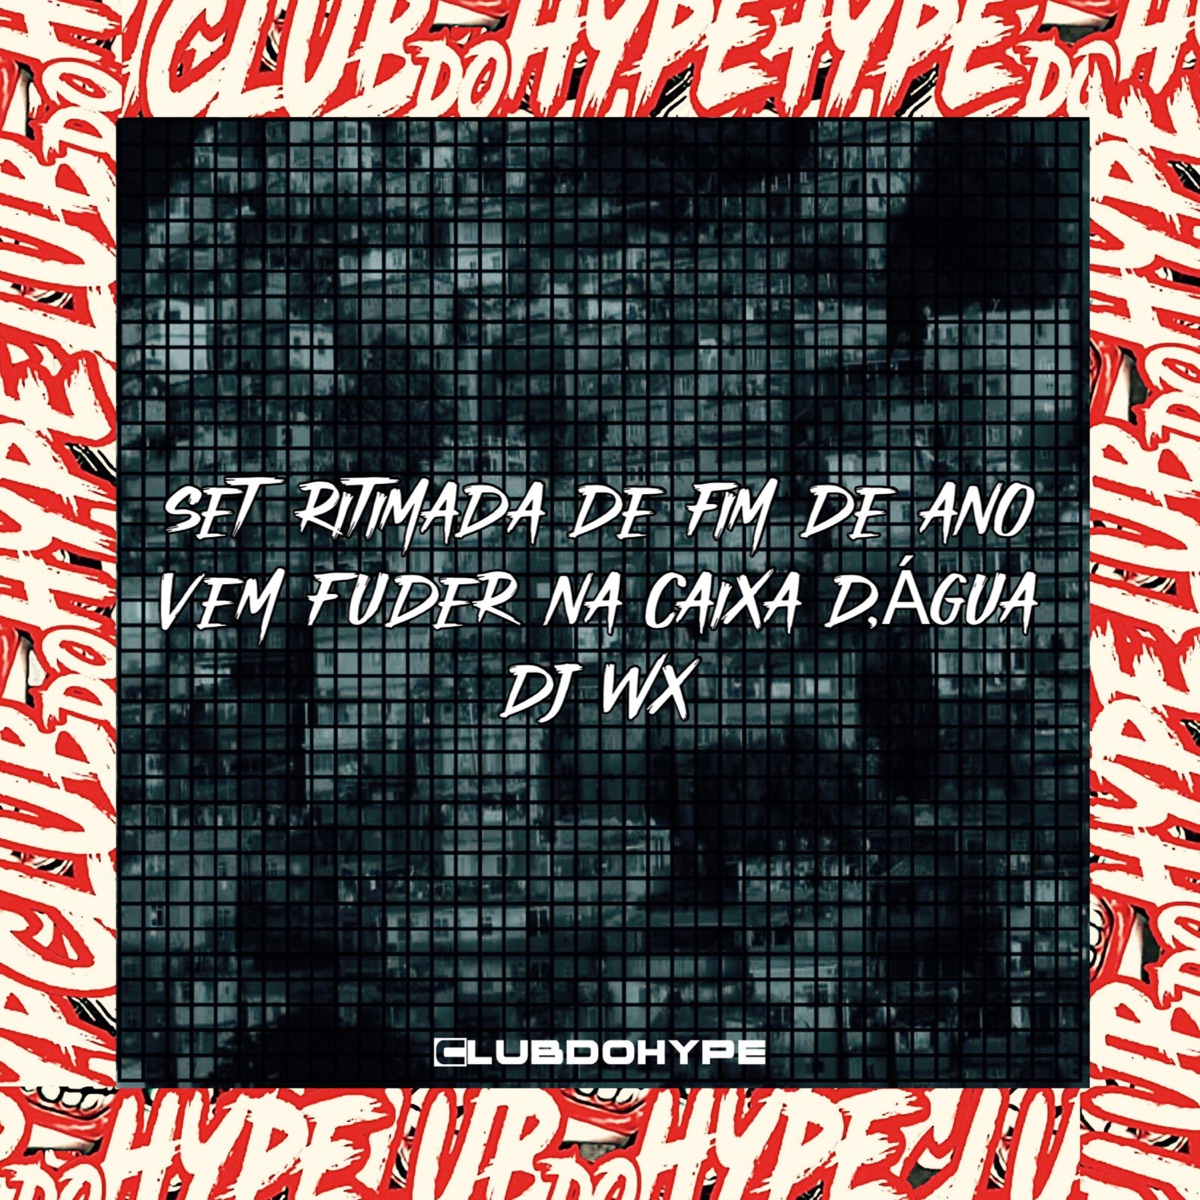 SET RITIMADA DE FIM DE ANO VEM FUDER NA CAIXA D,ÁGUA - Single — álbum de  Club do hype & DJ WX OFICIAL — Apple Music